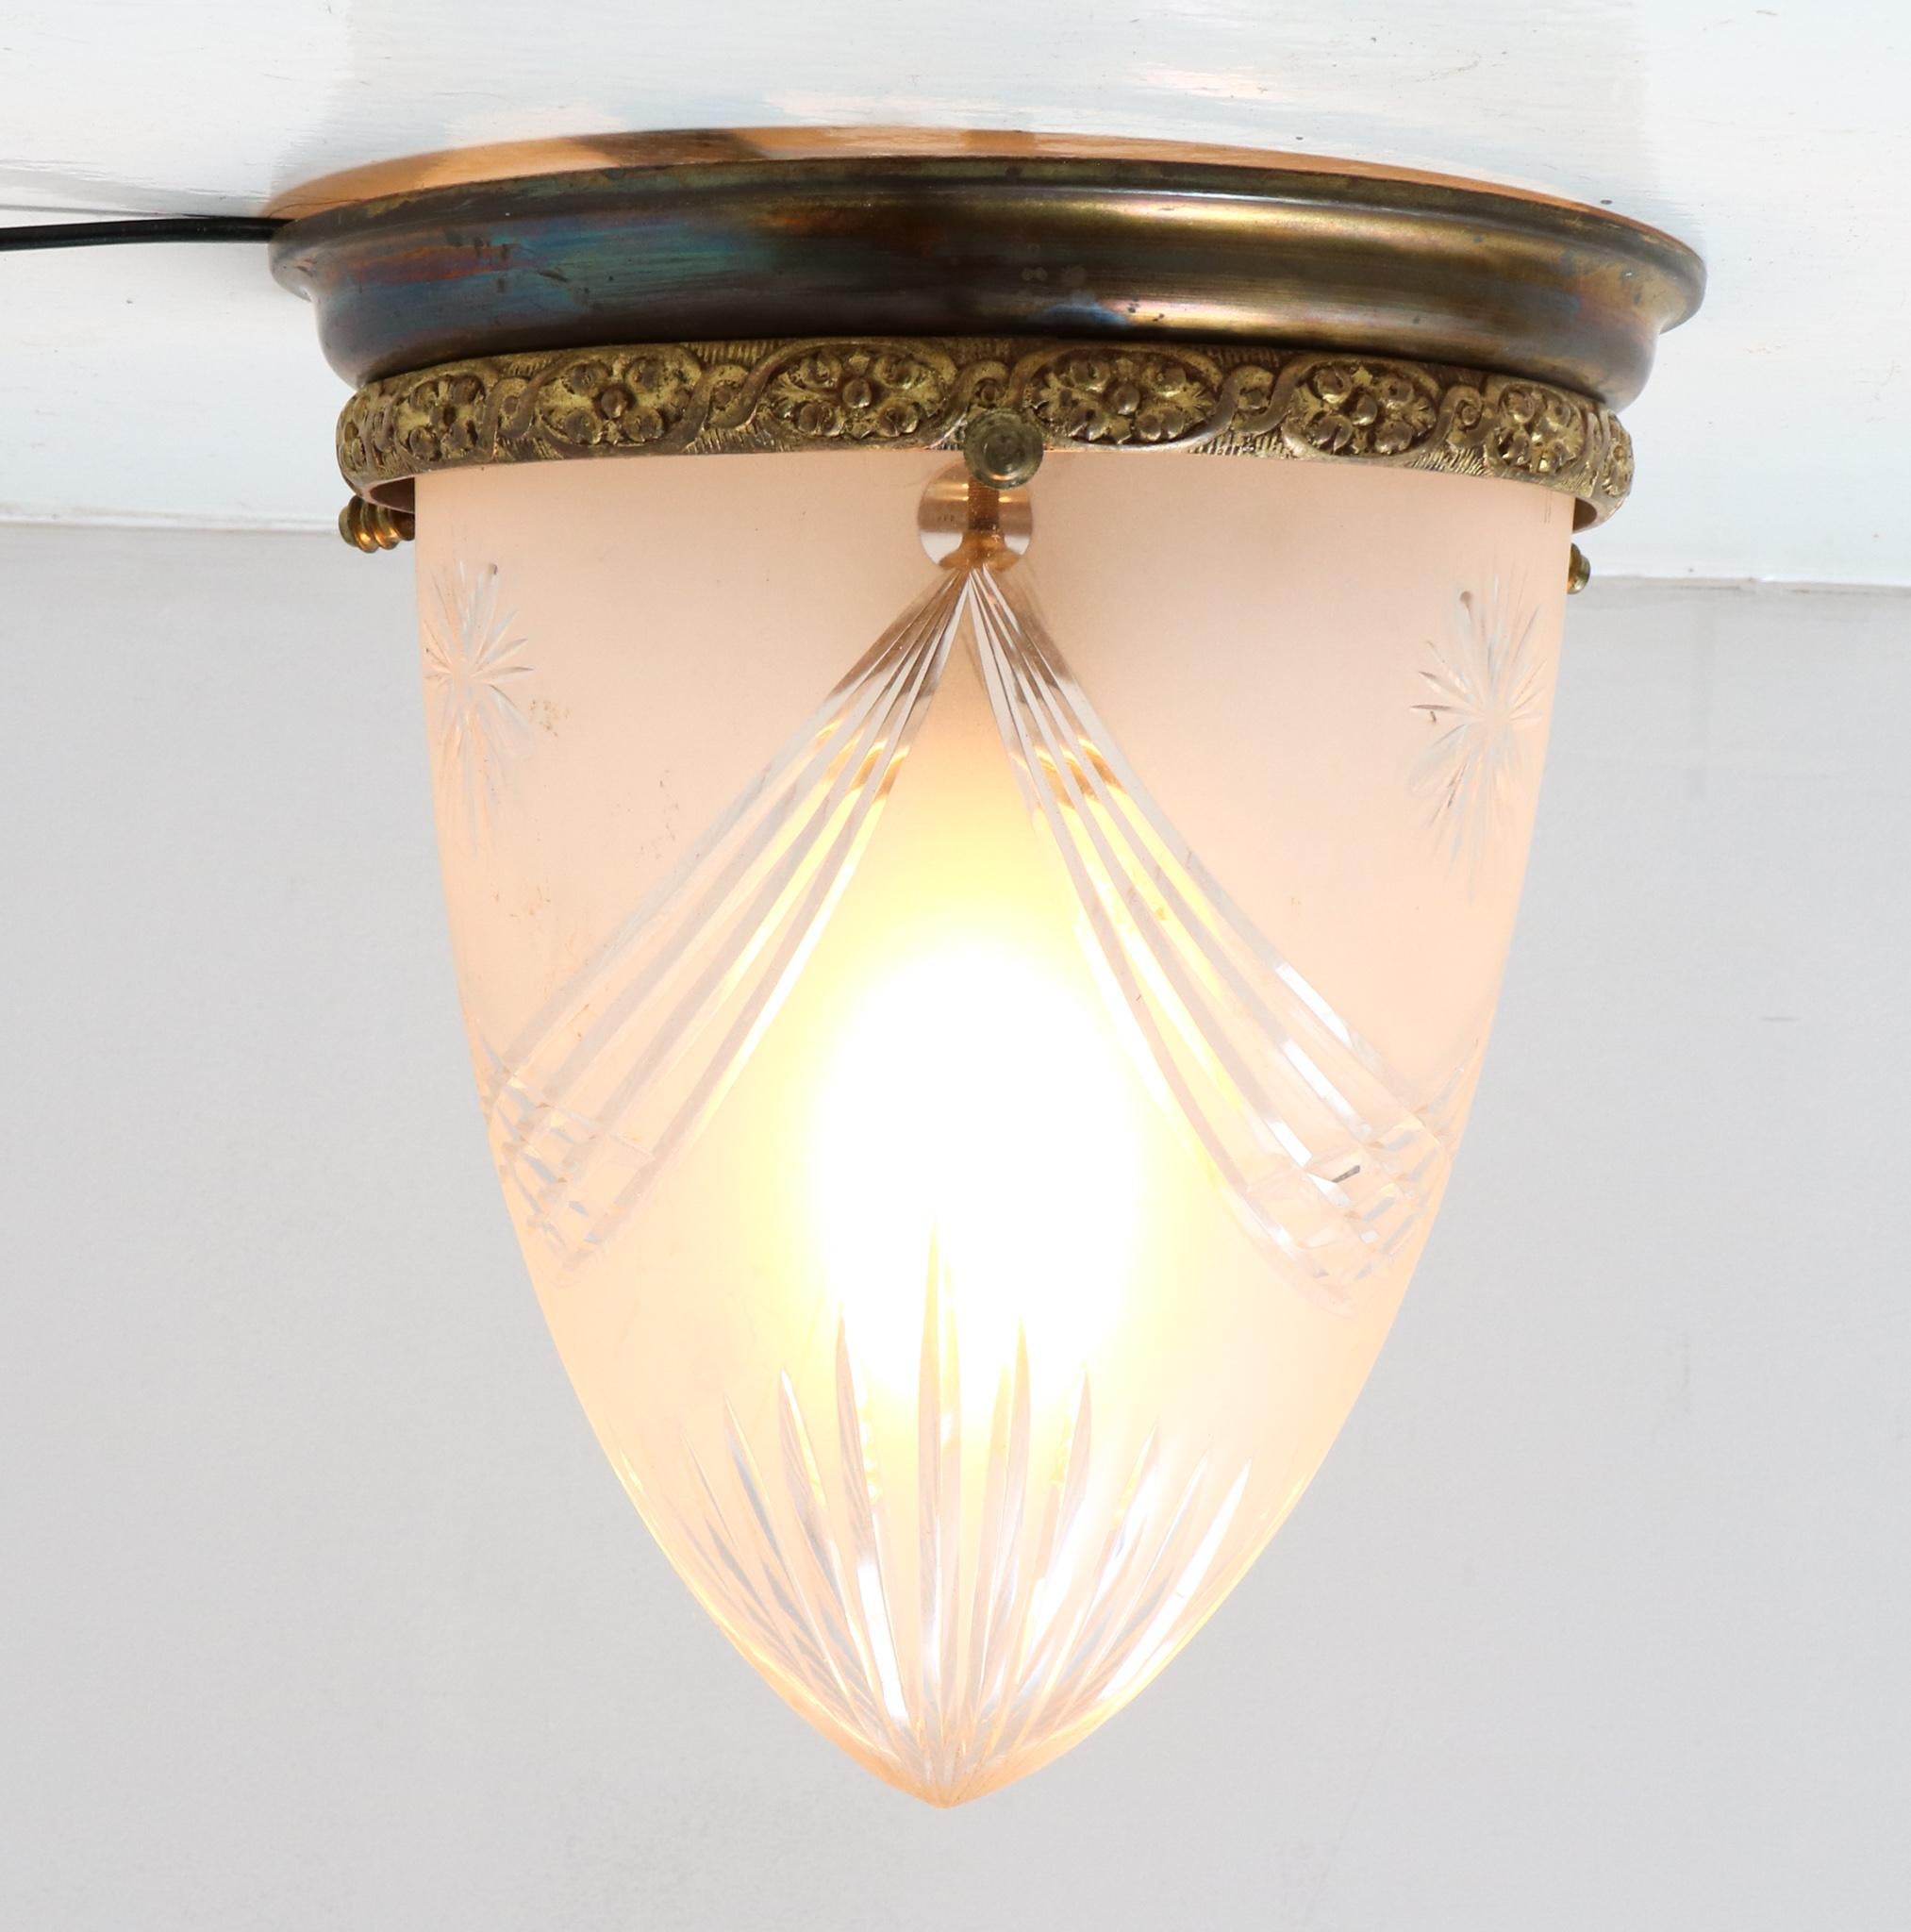 Dutch Patinated Bronze French Art Nouveau Cut Blown Glass Flush Mount Ceiling Light